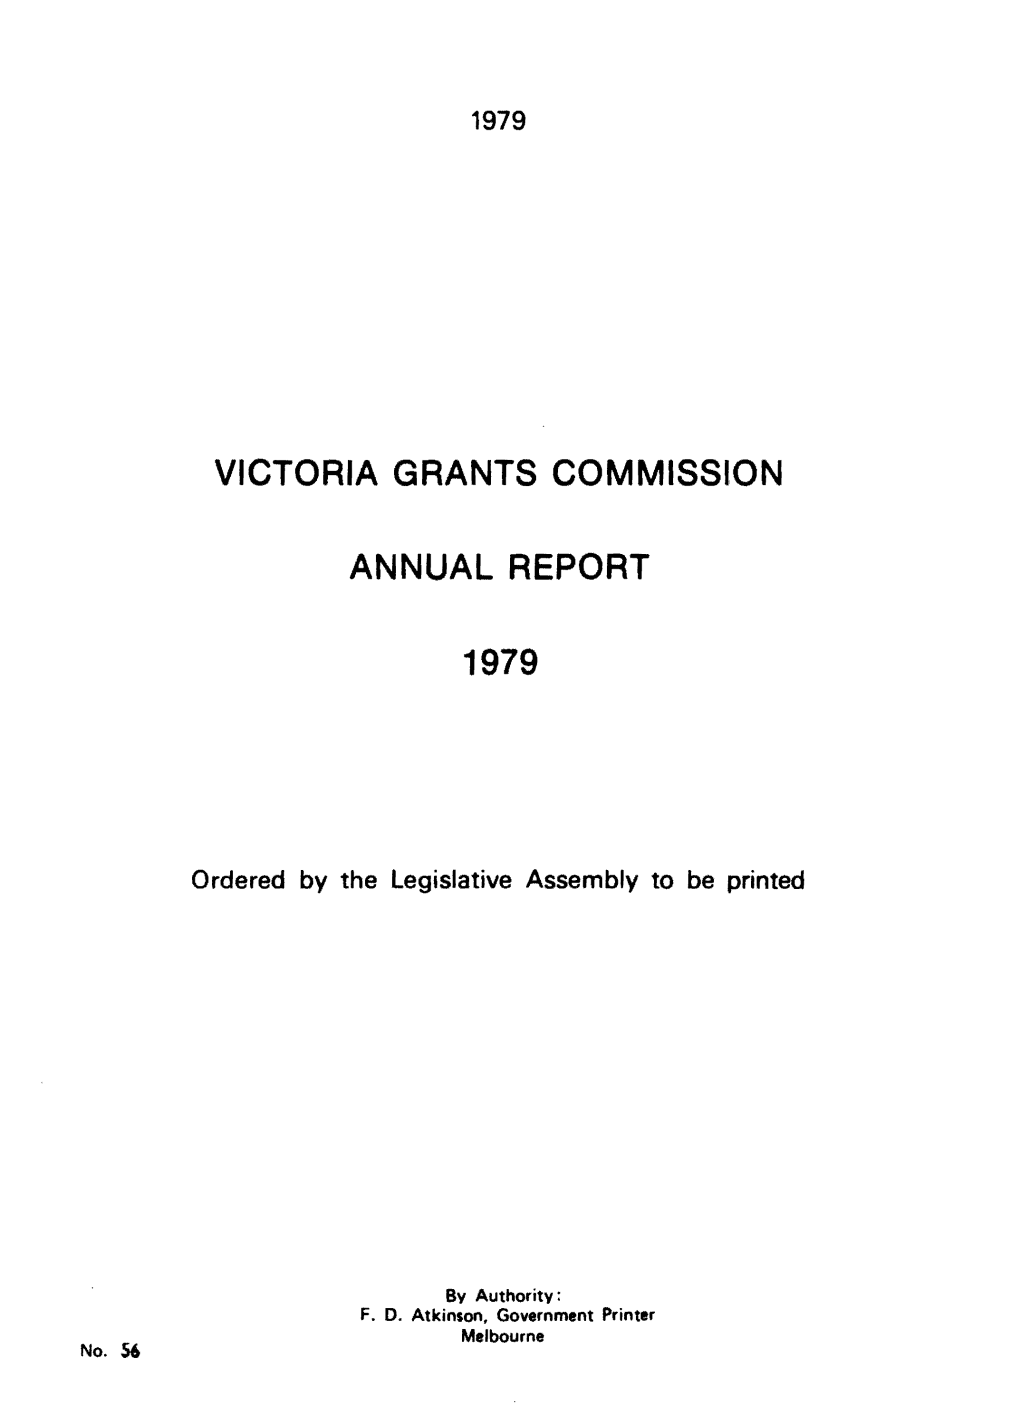 Victoria Grants Commission Annual Report 1979